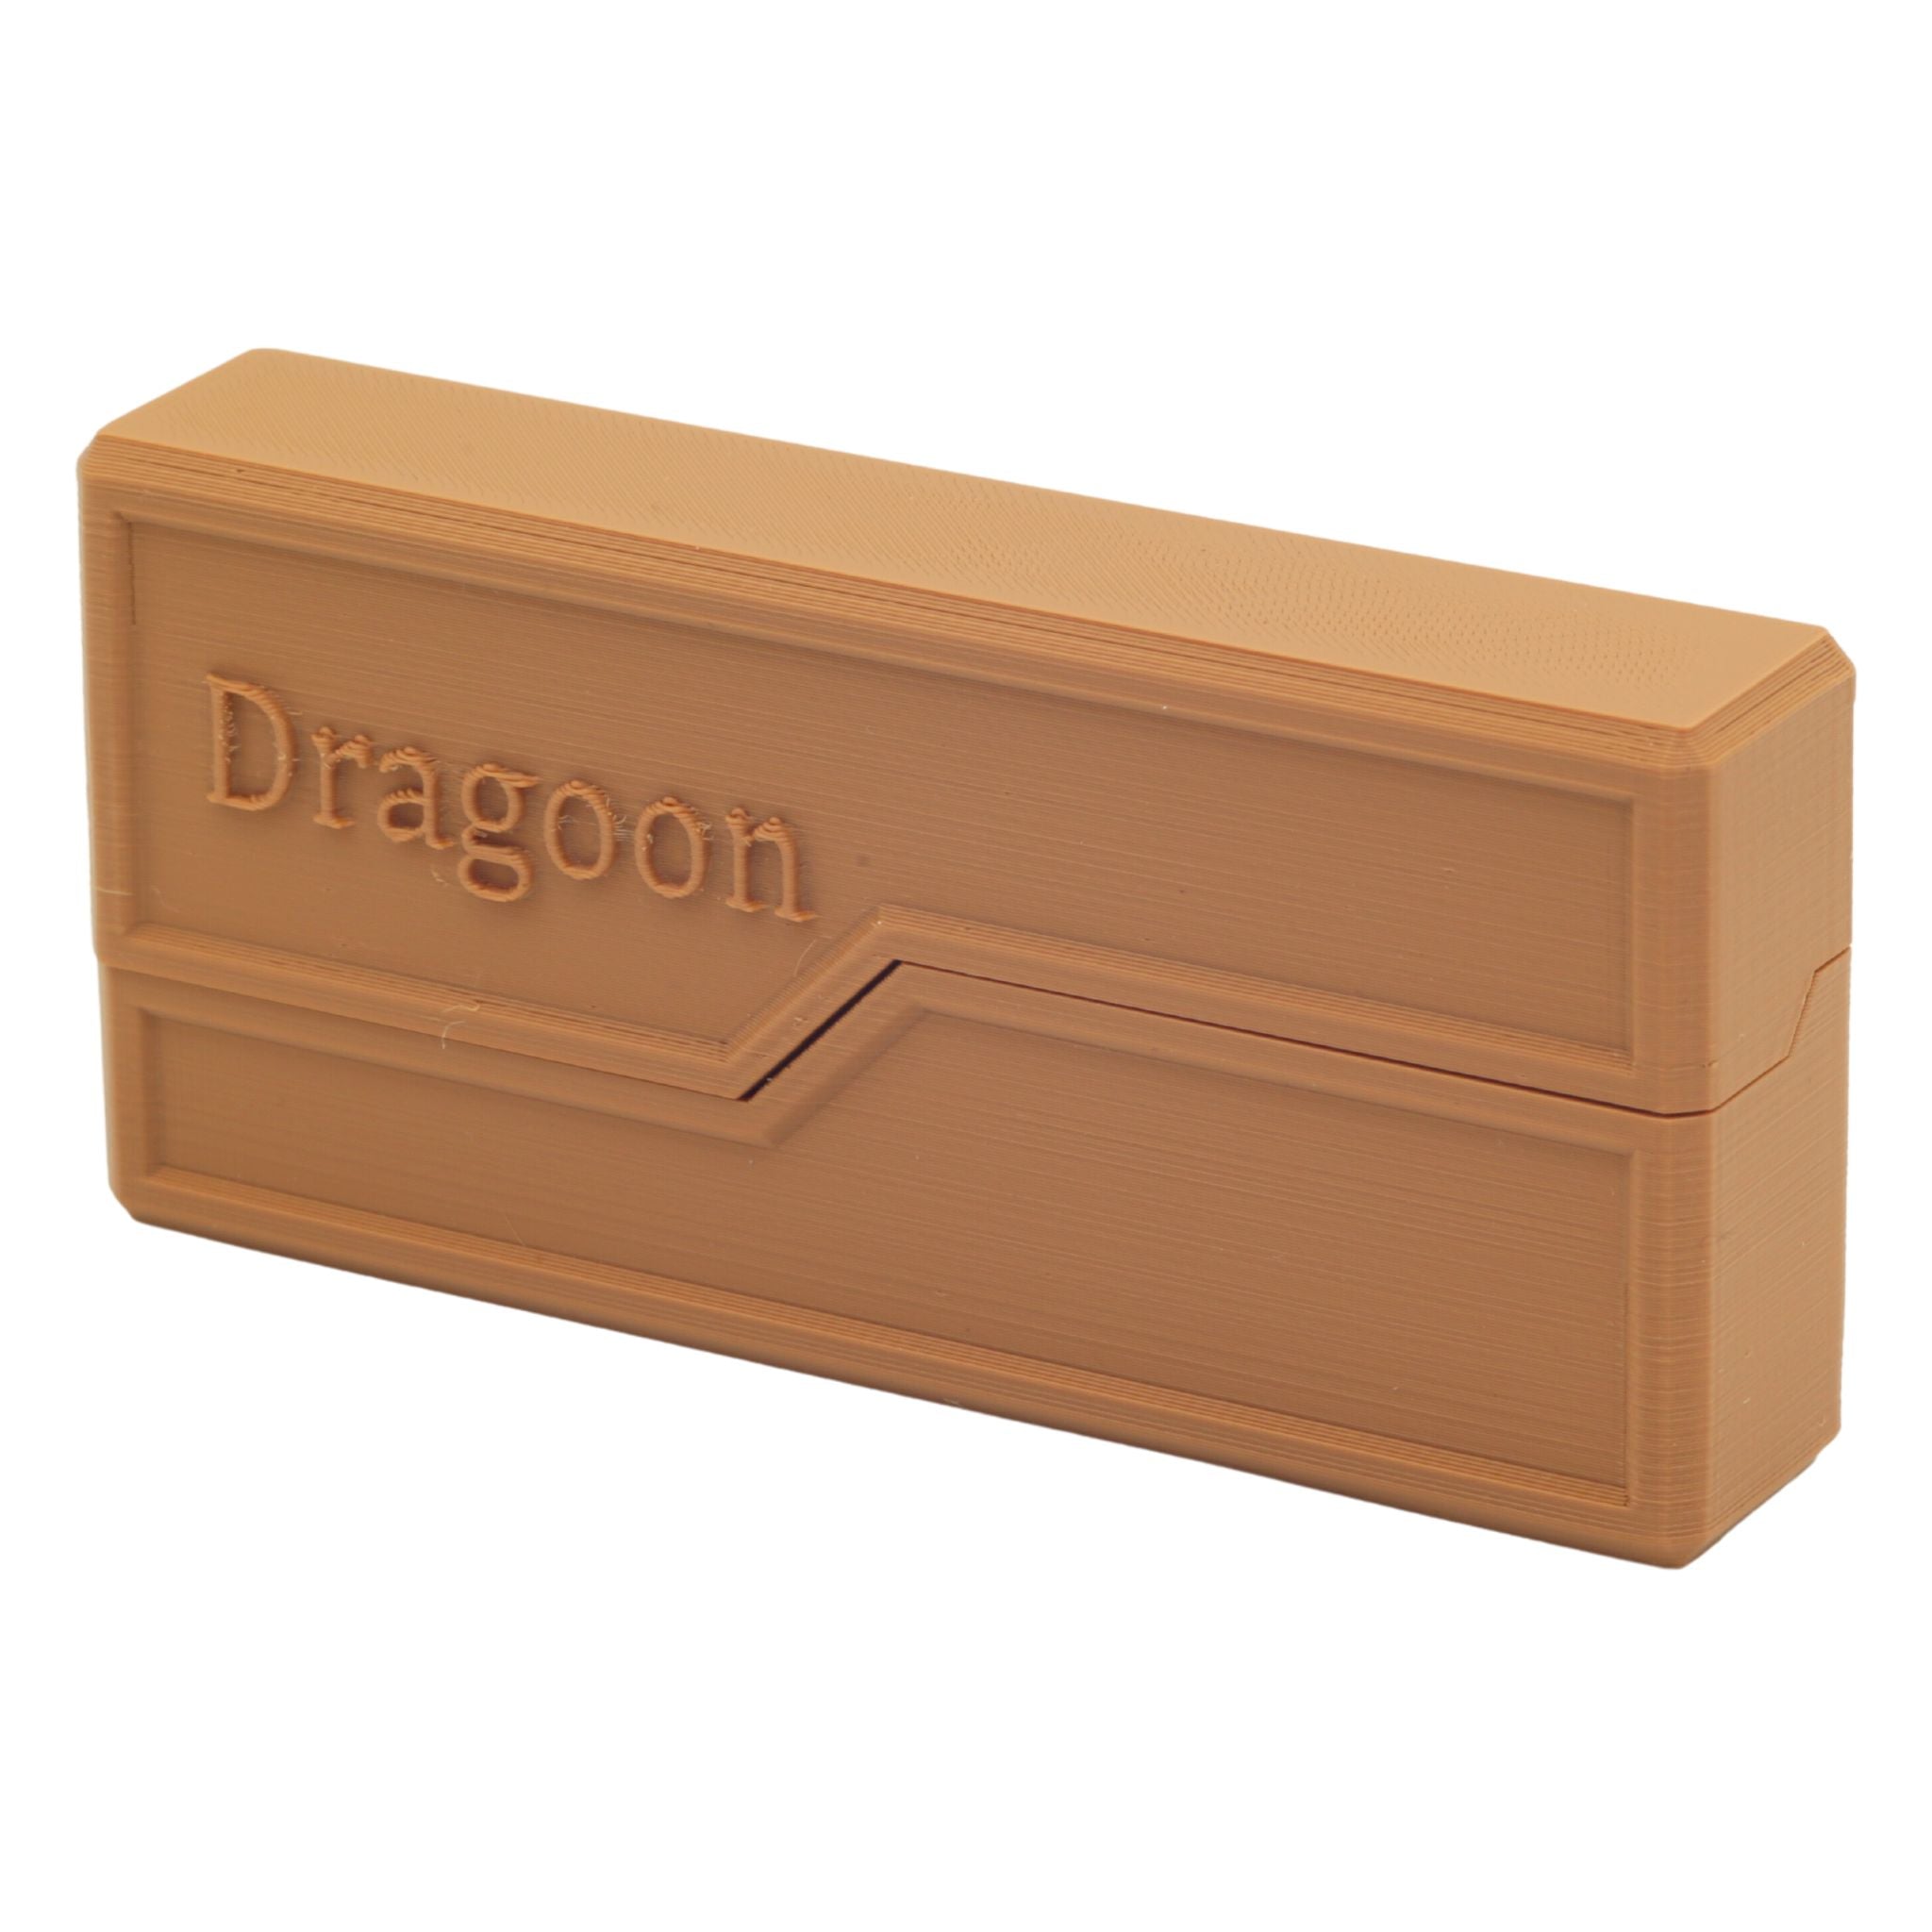 Dragoon Paper Cartridge Wallet Hinged Top